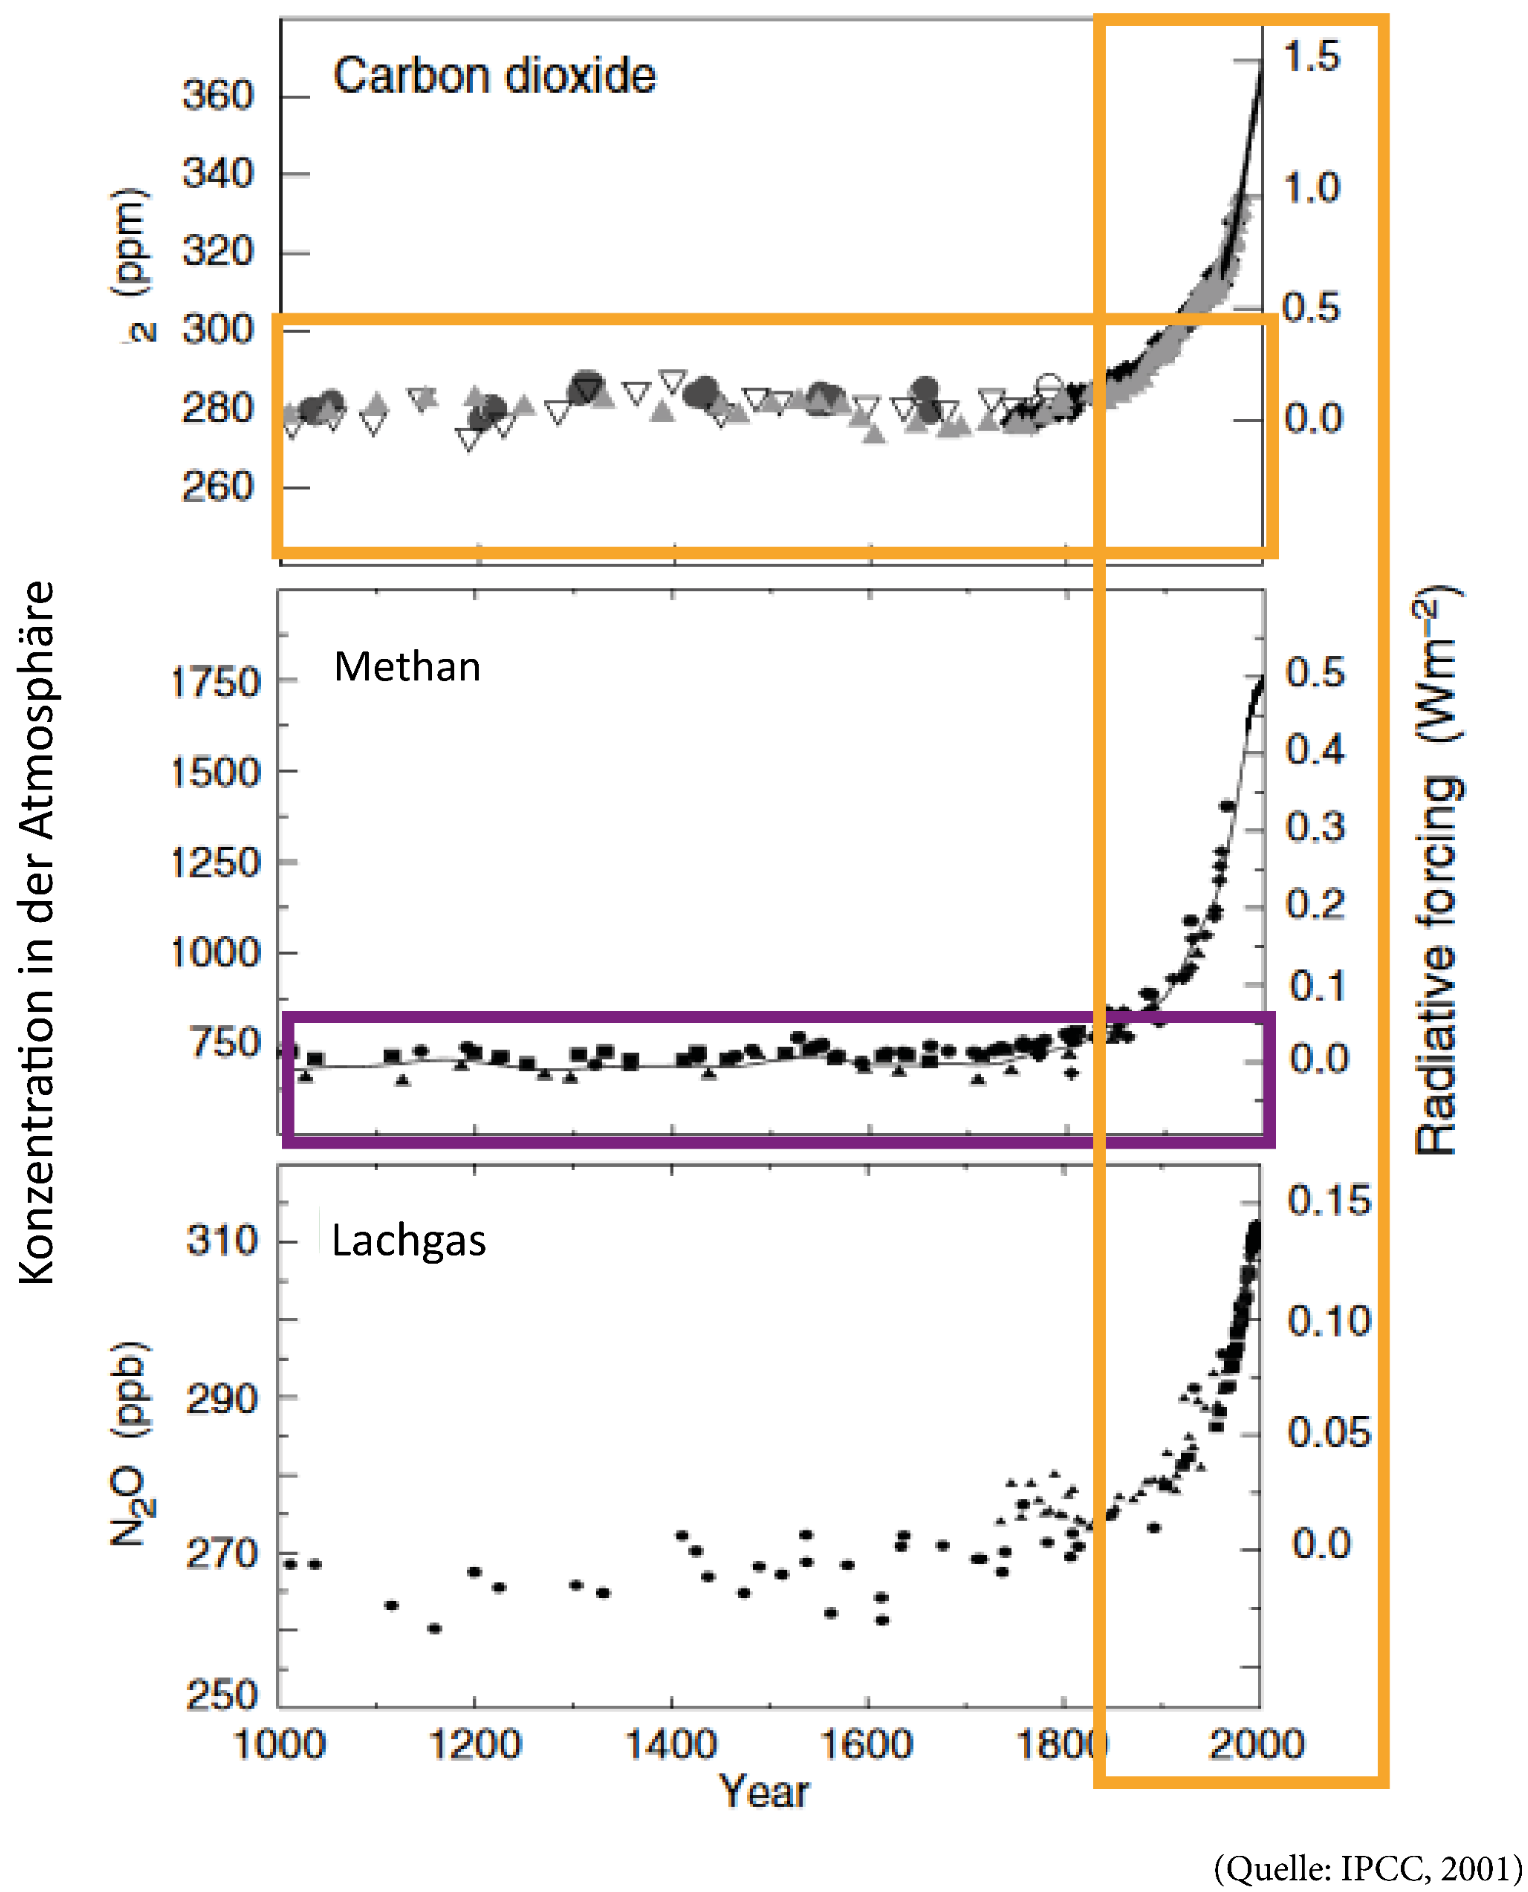 Die Grafik zeigt, wie sich die Konzentration der einzelnen THG in der Lufthuelle der Erde (=Atmosphaere) veraendert hat